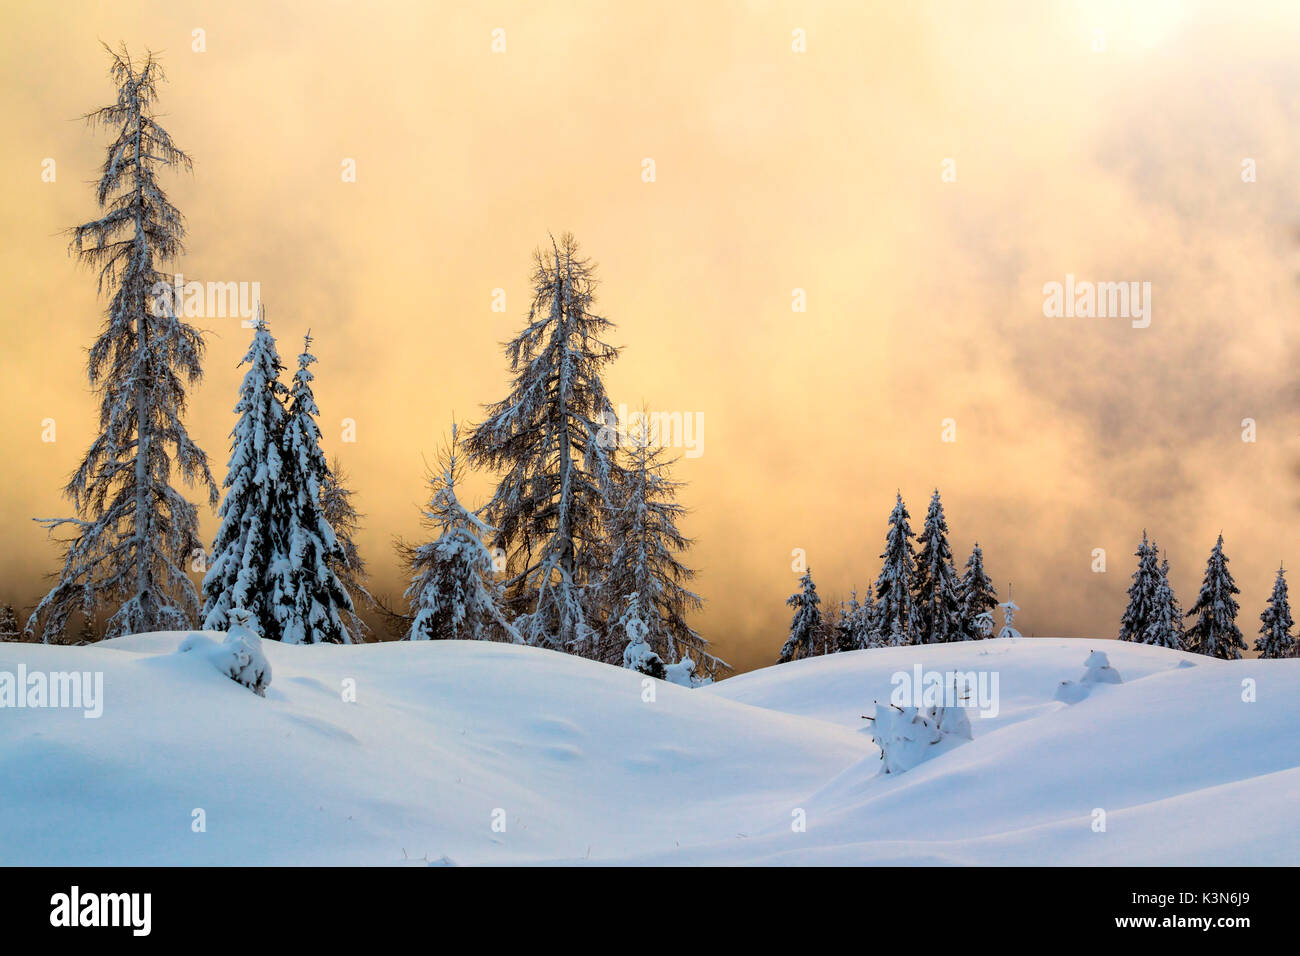 Dolomiten, Venetien, Belluno, Italien. Koniferen durch Schnee in eine surreale Winterlandschaft. Stockfoto